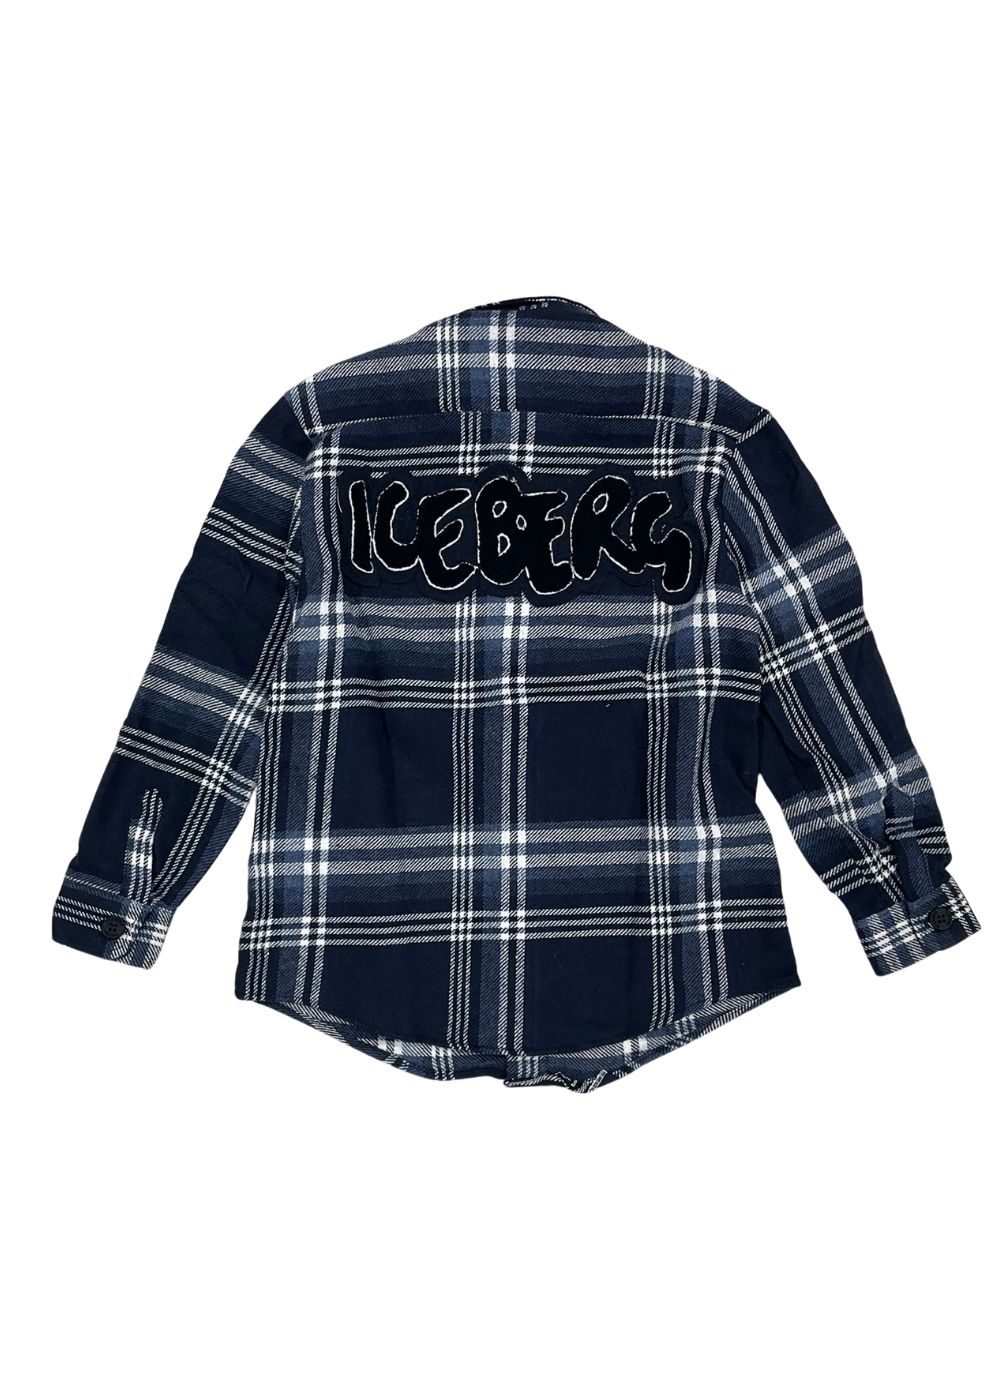 Featured image for “Iceberg Camicia Con Logo”